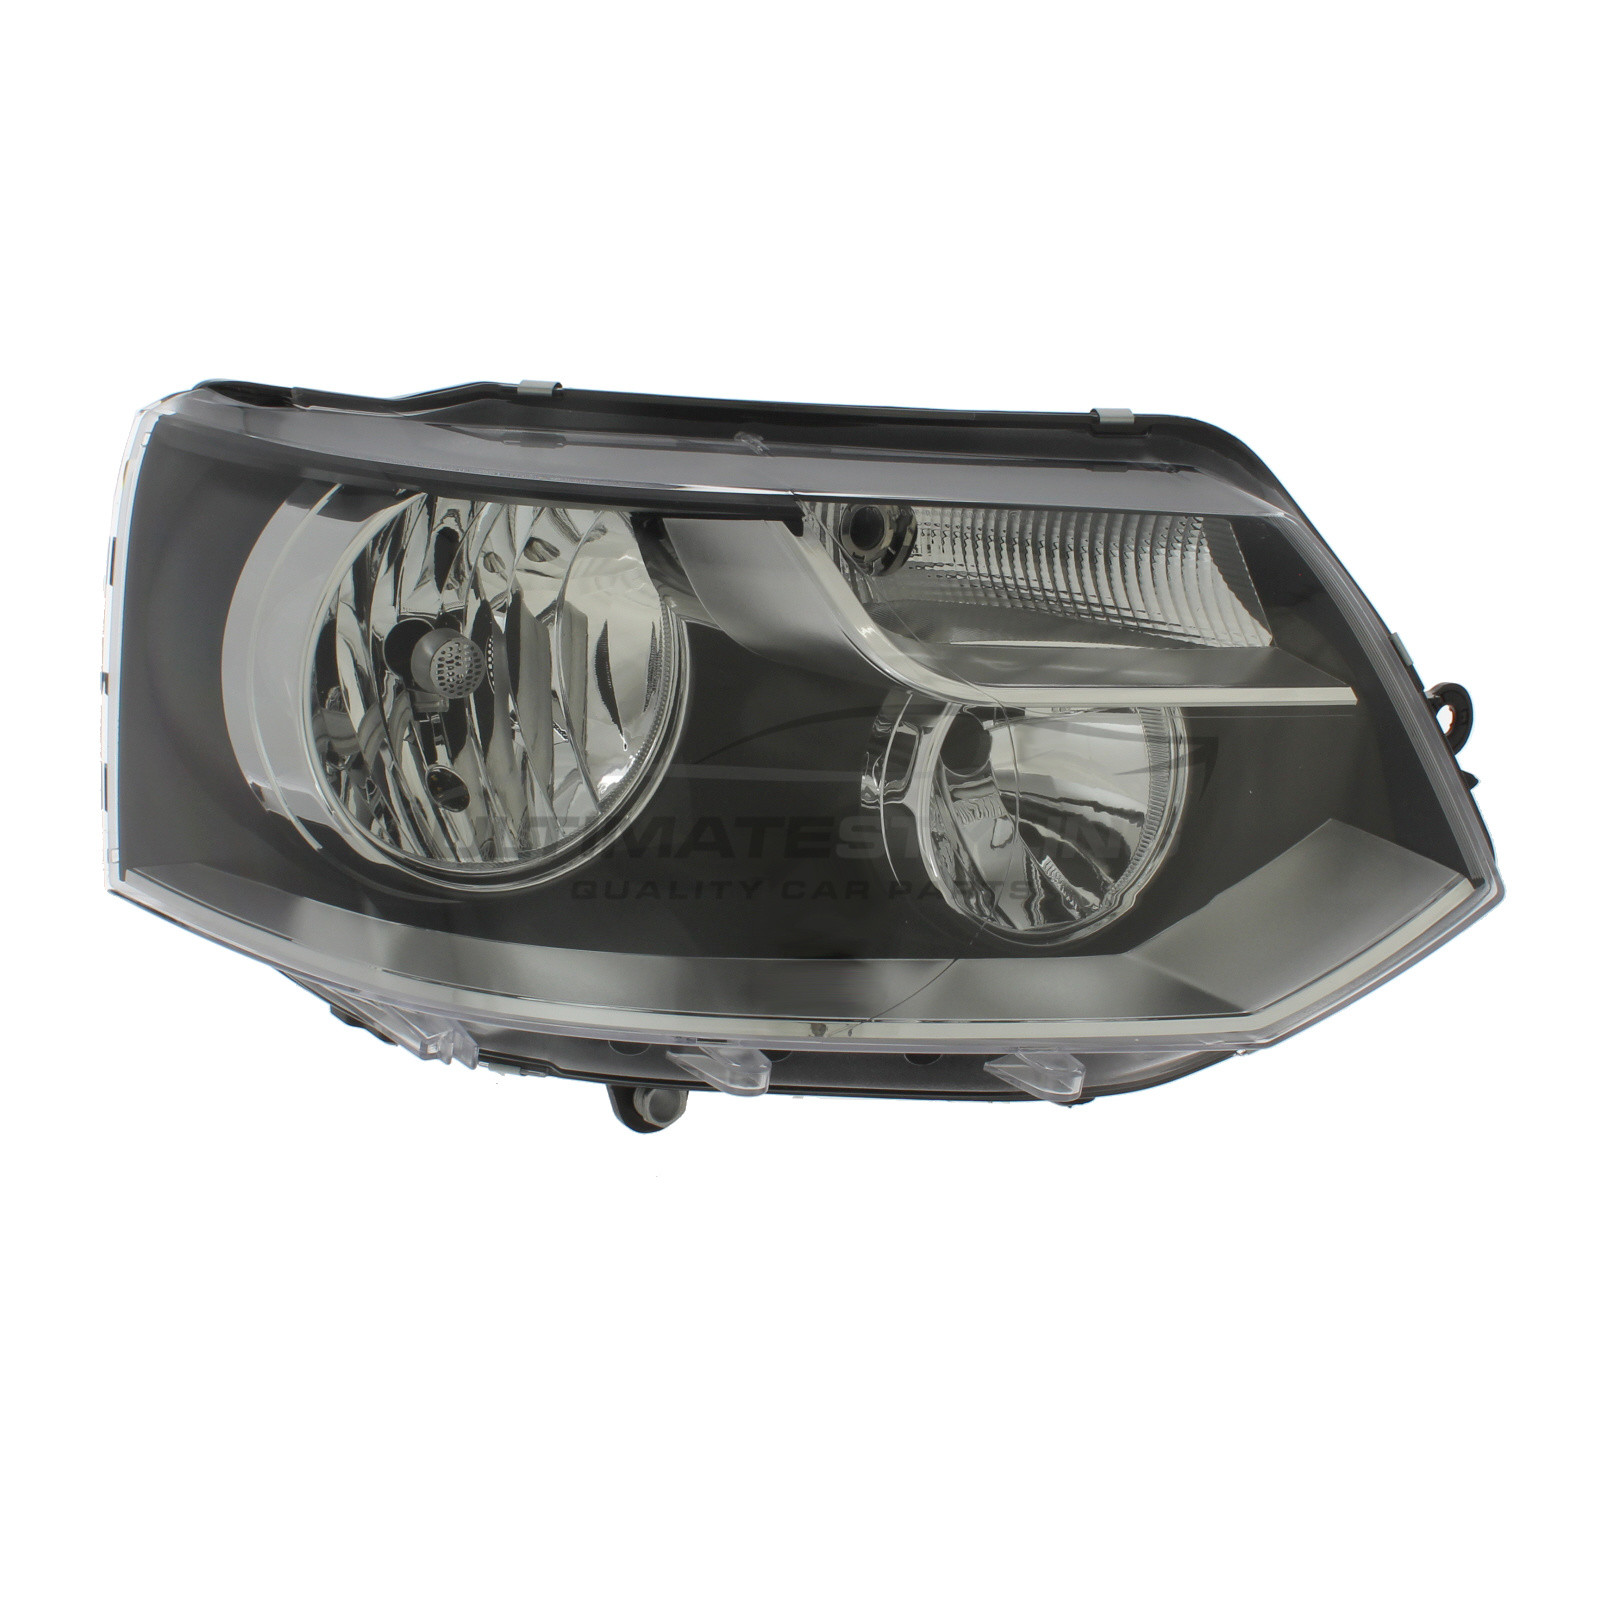 Headlight / Headlamp for VW Transporter